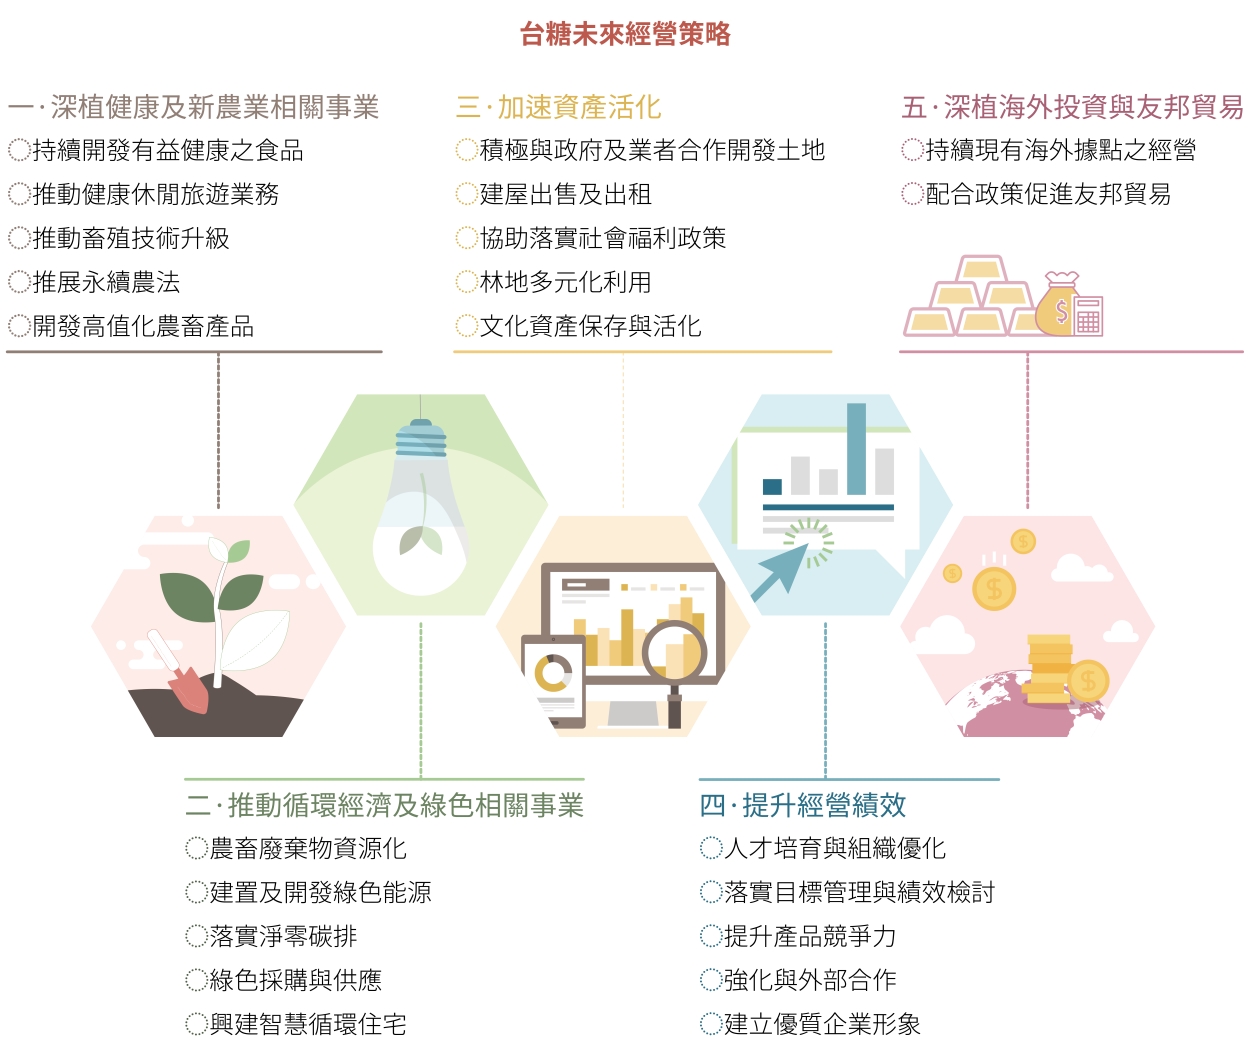 台灣未來經營策略包含「深植健康及綠色相關事業」、「推動循環經濟及綠色相關事業」、「加速資產活化」、「強化公司體質，提升經營績效」、「深植海外投資與友邦貿易」五大面向